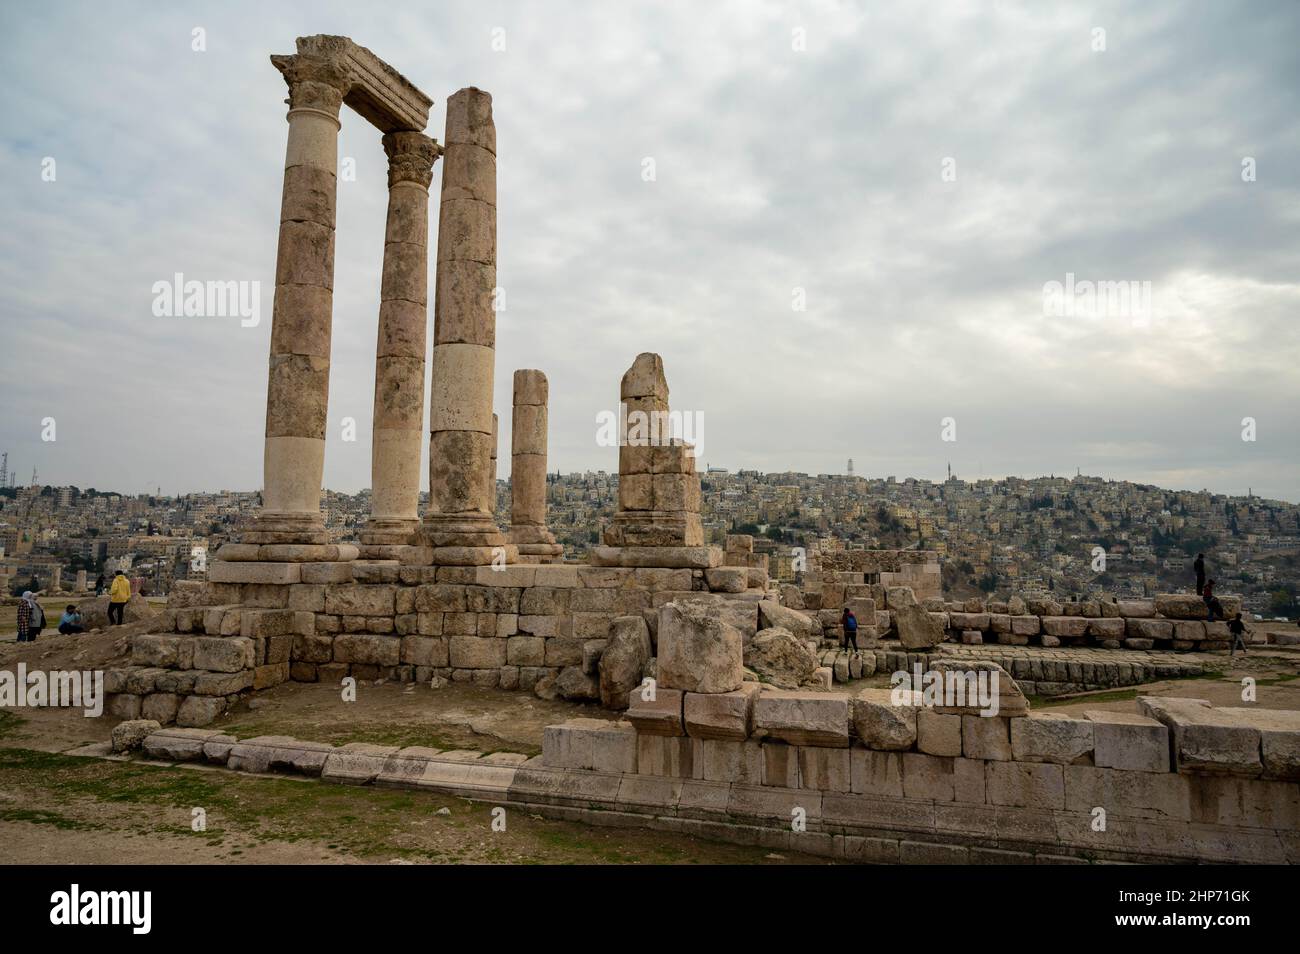 Temple of Hercules, Amman Citadel, Jordan Stock Photo